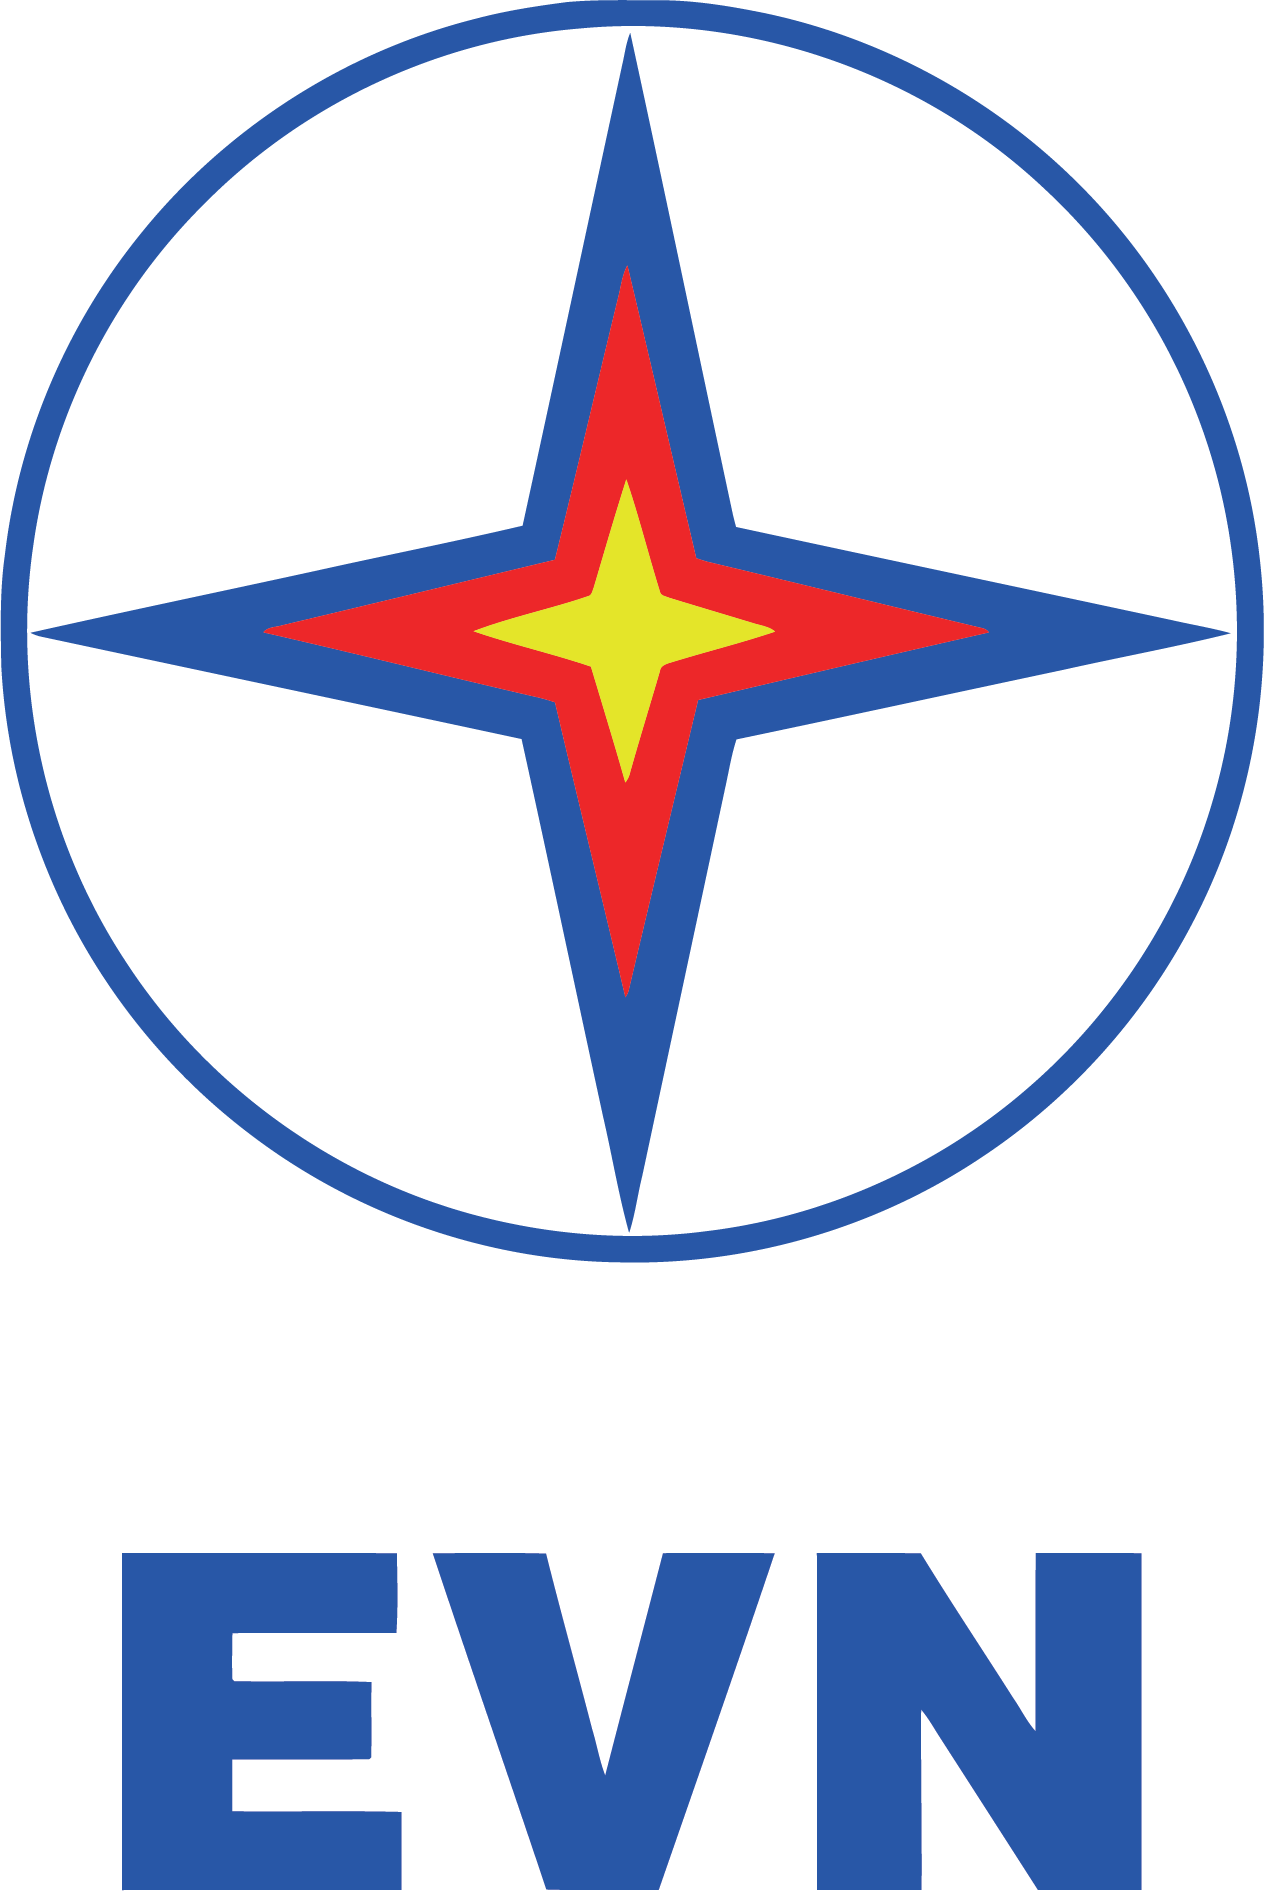 Tập đoàn Điện lực Việt Nam